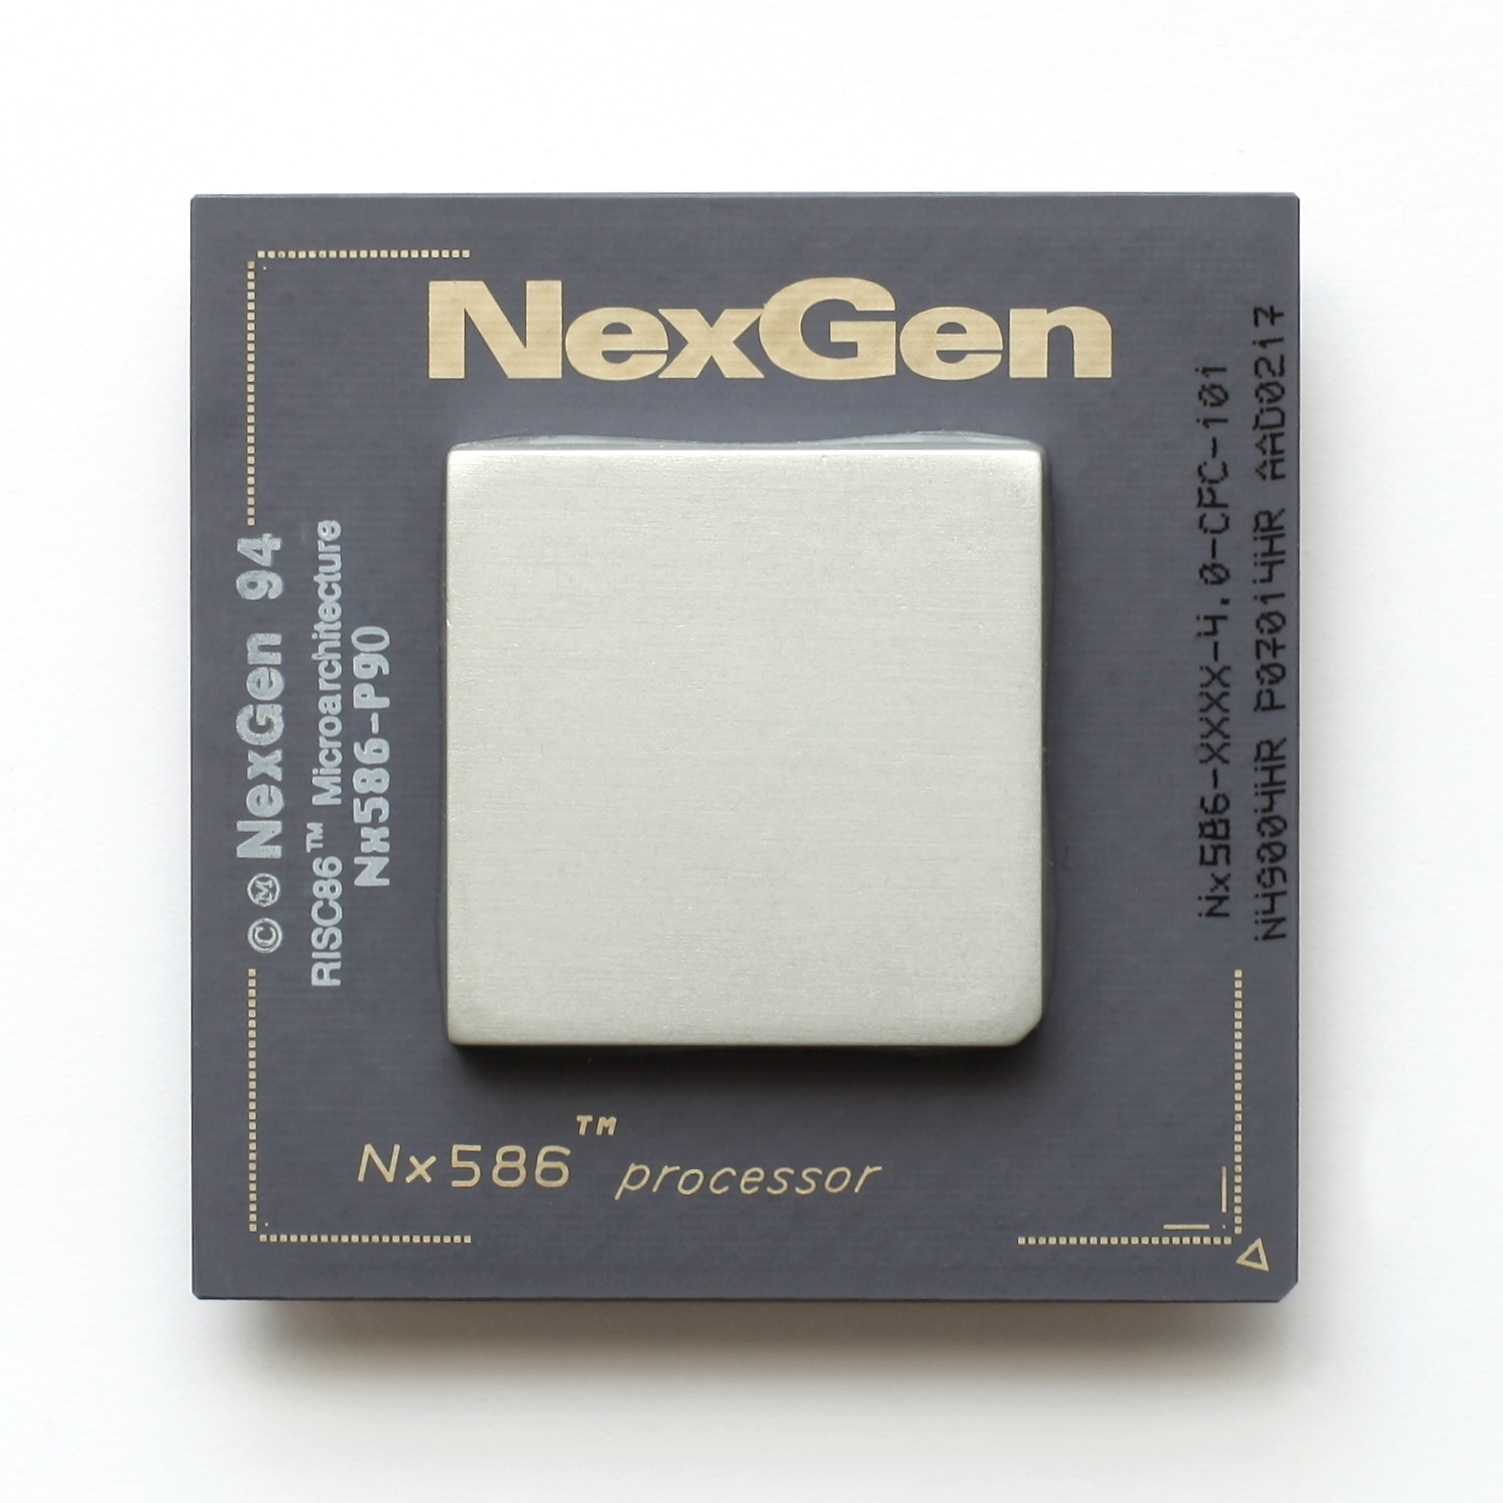 照片中提到了NexGen、TM、Nx586，跟Nexcare有關，包含了奔騰III 533 MHz、H`nf、產品設計、牌、英特爾